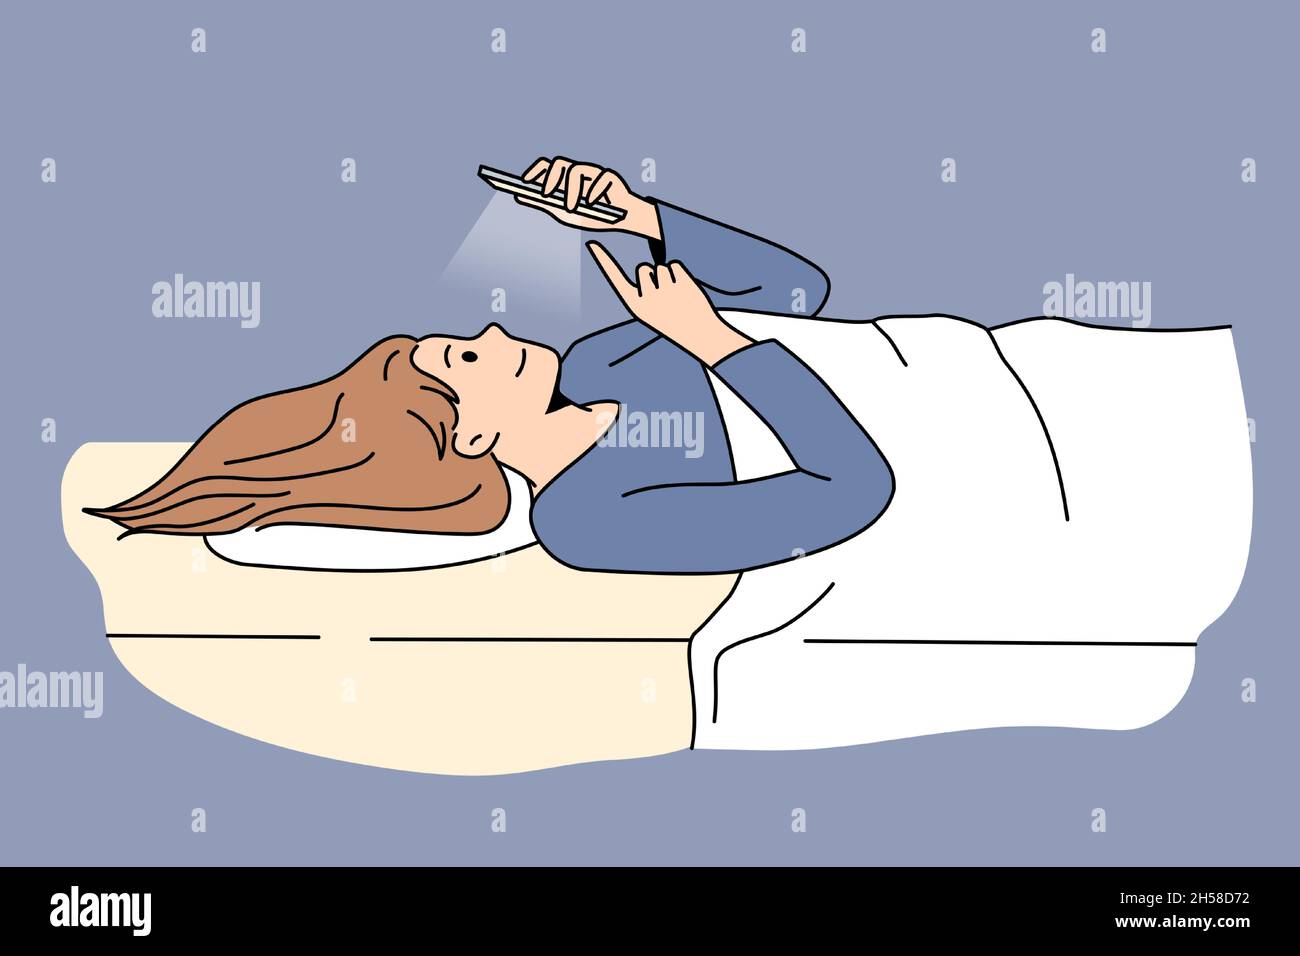 Sucht nach Internet und Chat-Konzept. Junge Frau Zeichentrickfigur im Bett liegend mit Ruhe eingeschaltet Smartphone Chat Vektor Illustration Stock Vektor